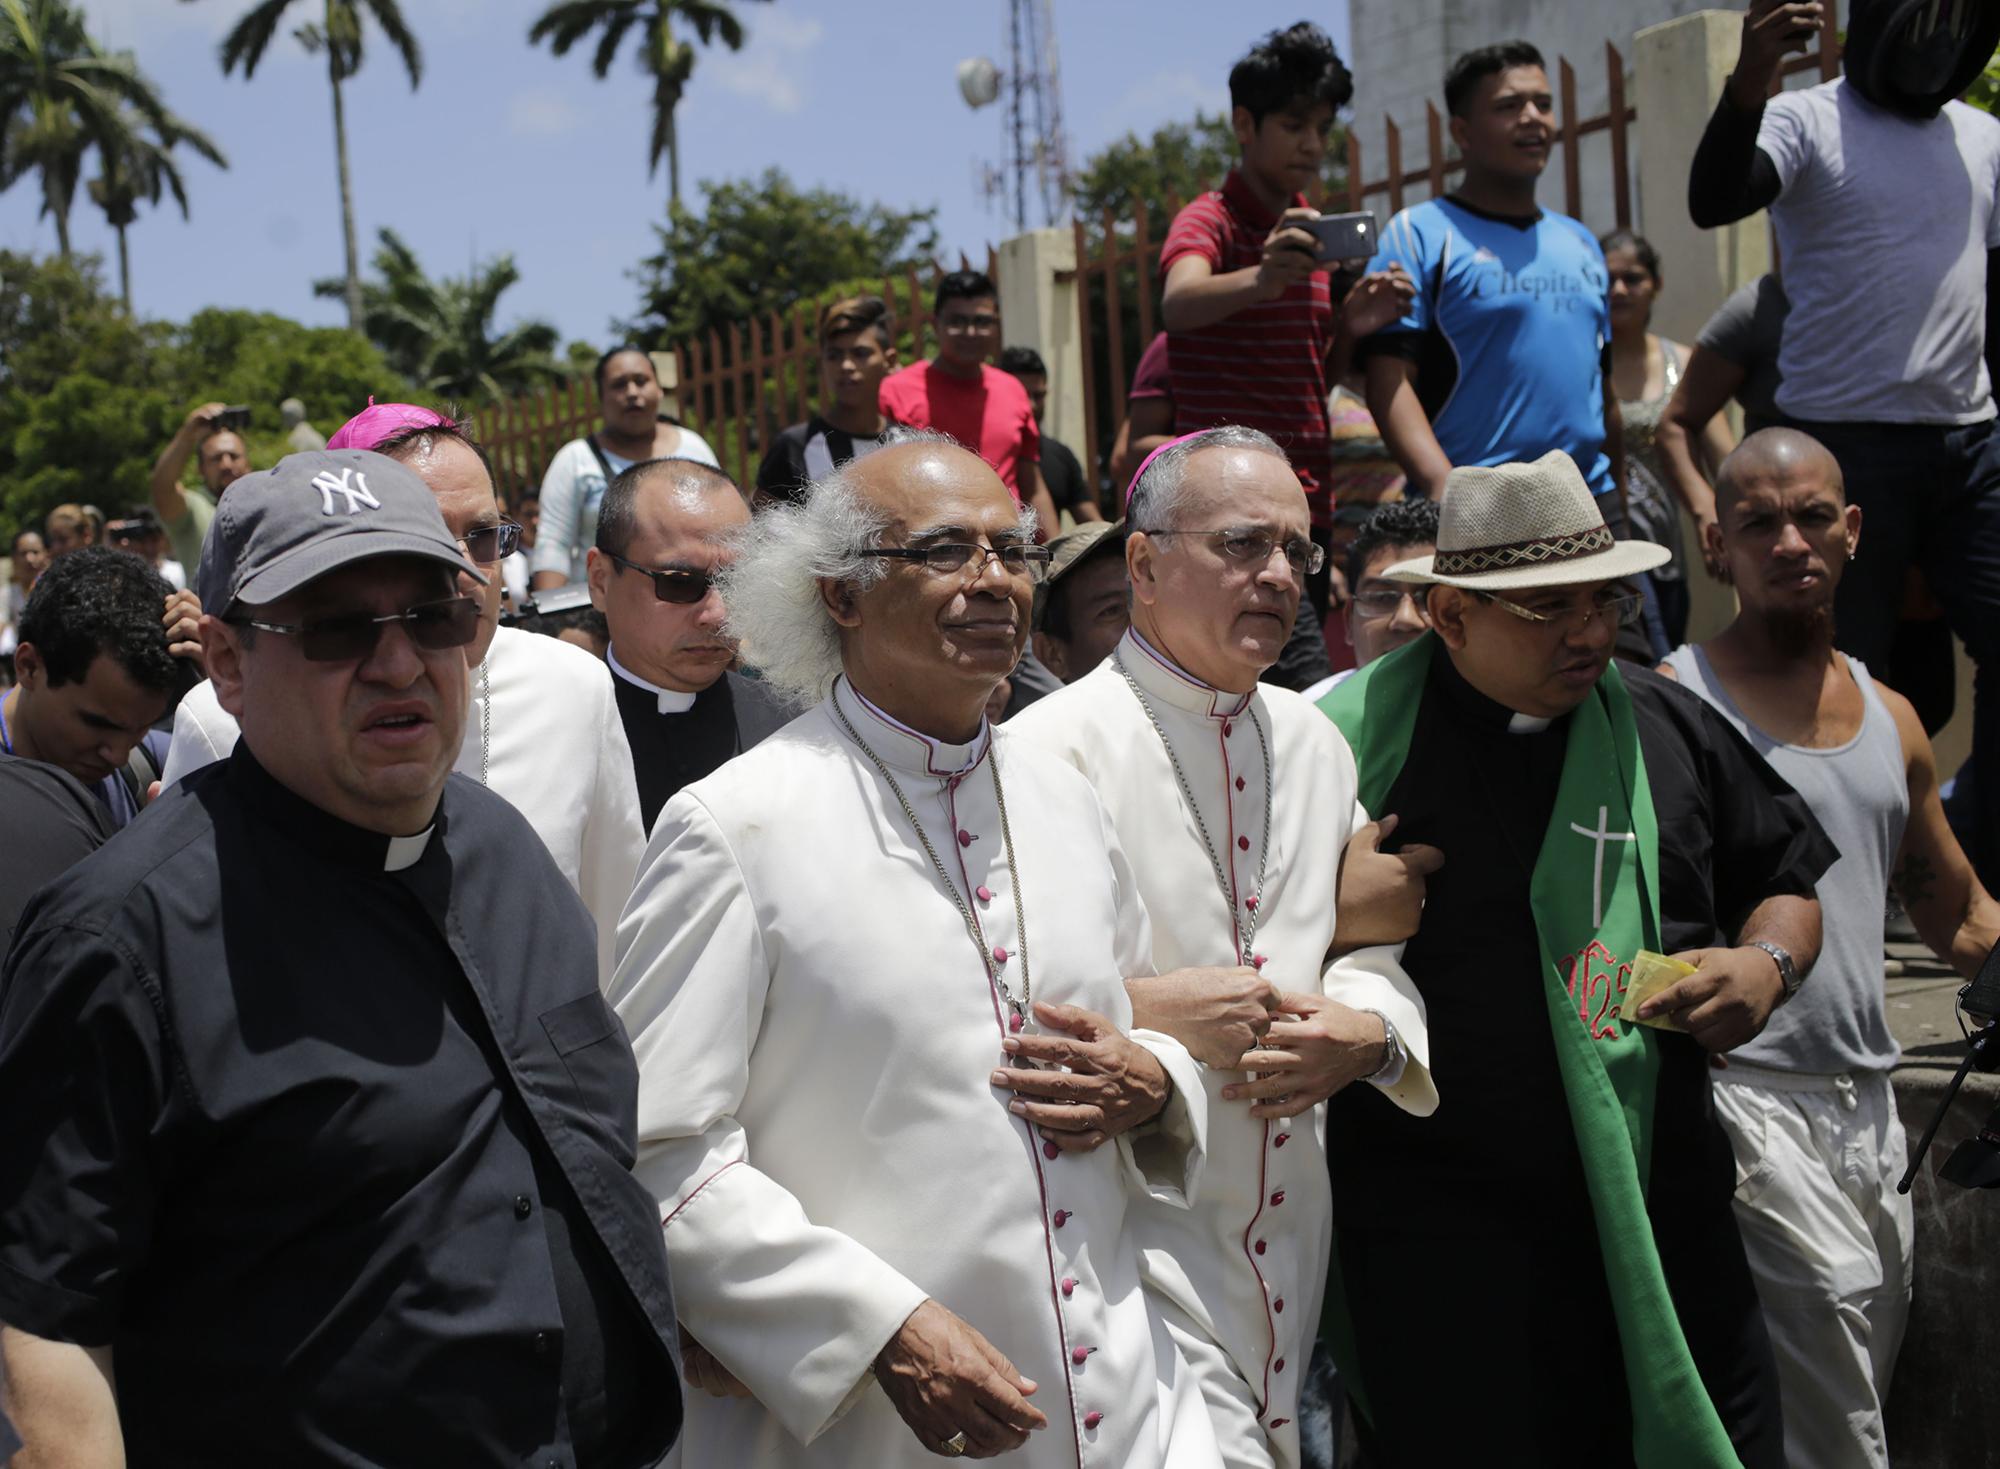 El cardenal Leopoldo Brenes (2-L) y el obispo Silvio Baez (3-L) llegan a la Basílica de San Sebastián en Diriamba, Nicaragua, el 9 de julio de 2018, donde fueron hostigados por miembros de la juventud sandinista progubernamental. / AFP PHOTO / Inti OCON